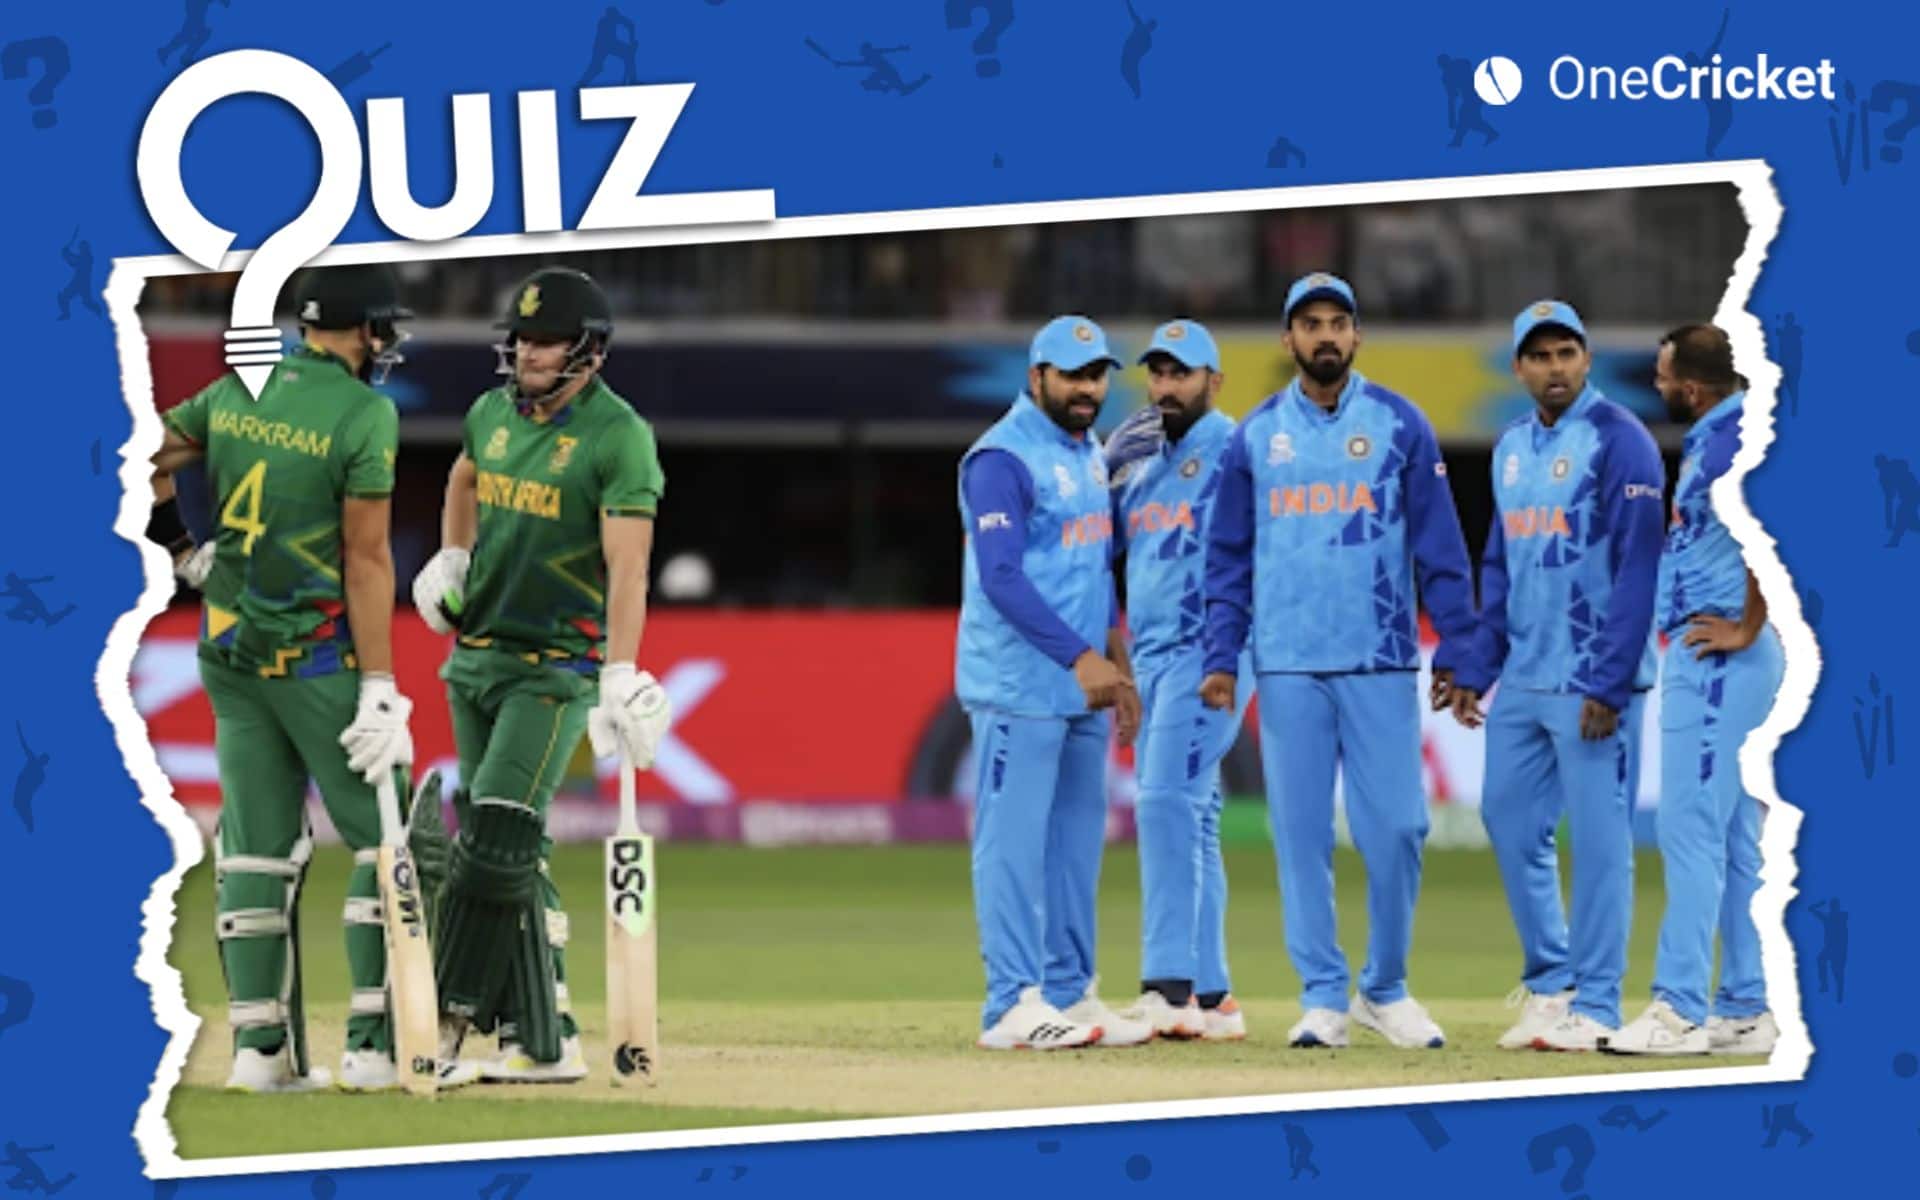 भारत, दक्षिण अफ्रीका और टी20 विश्व कप के बारे में आपकी जानकारी कितनी है? यहाँ अपना ज्ञान परखें